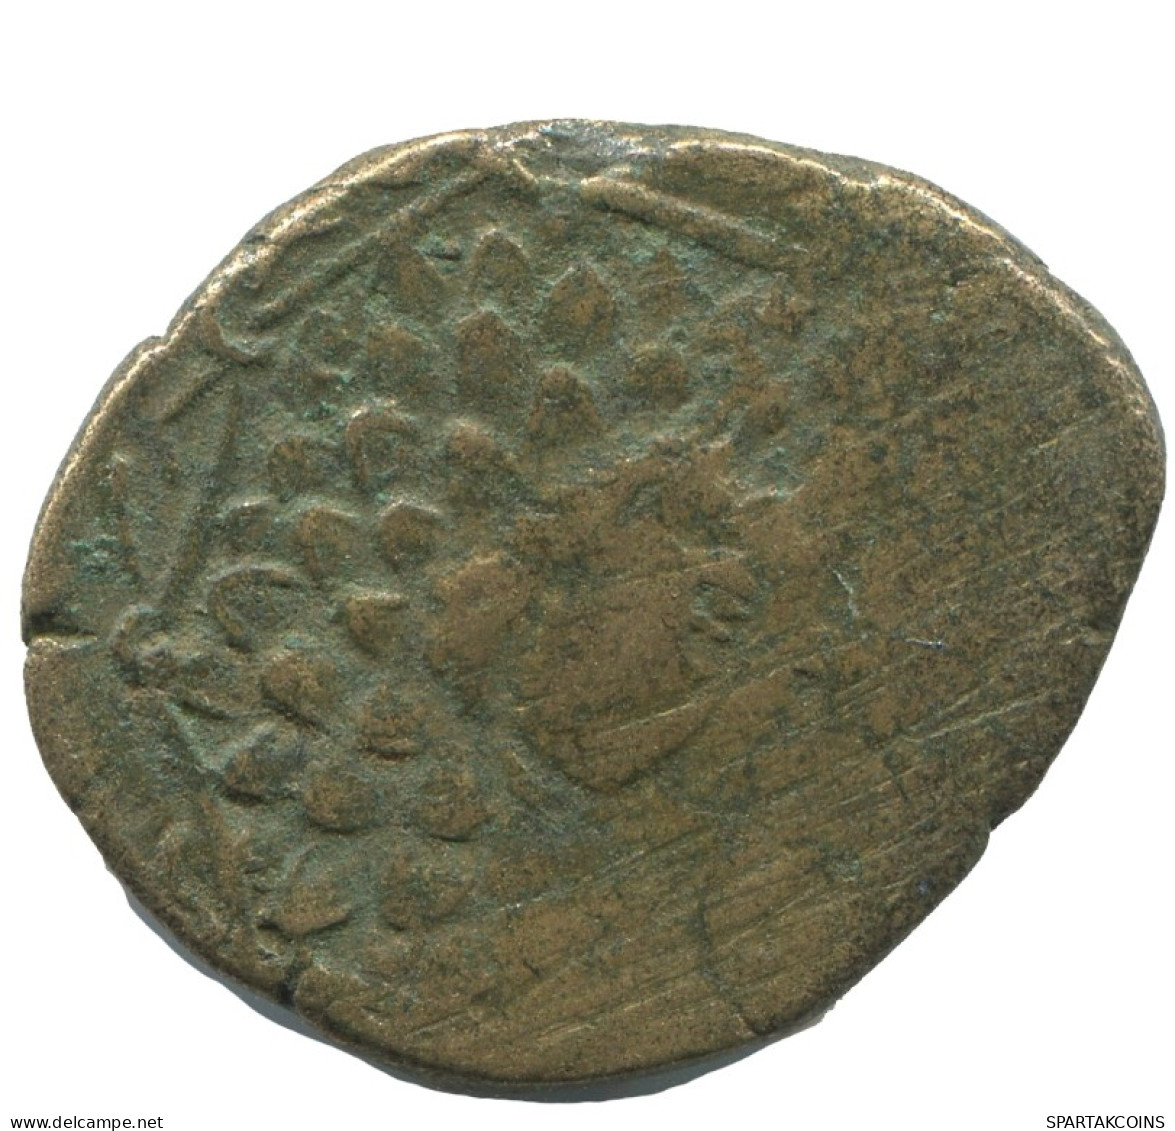 AMISOS PONTOS AEGIS WITH FACING GORGON Ancient GREEK Coin 5.5g/24mm #AF754.25.U.A - Greek